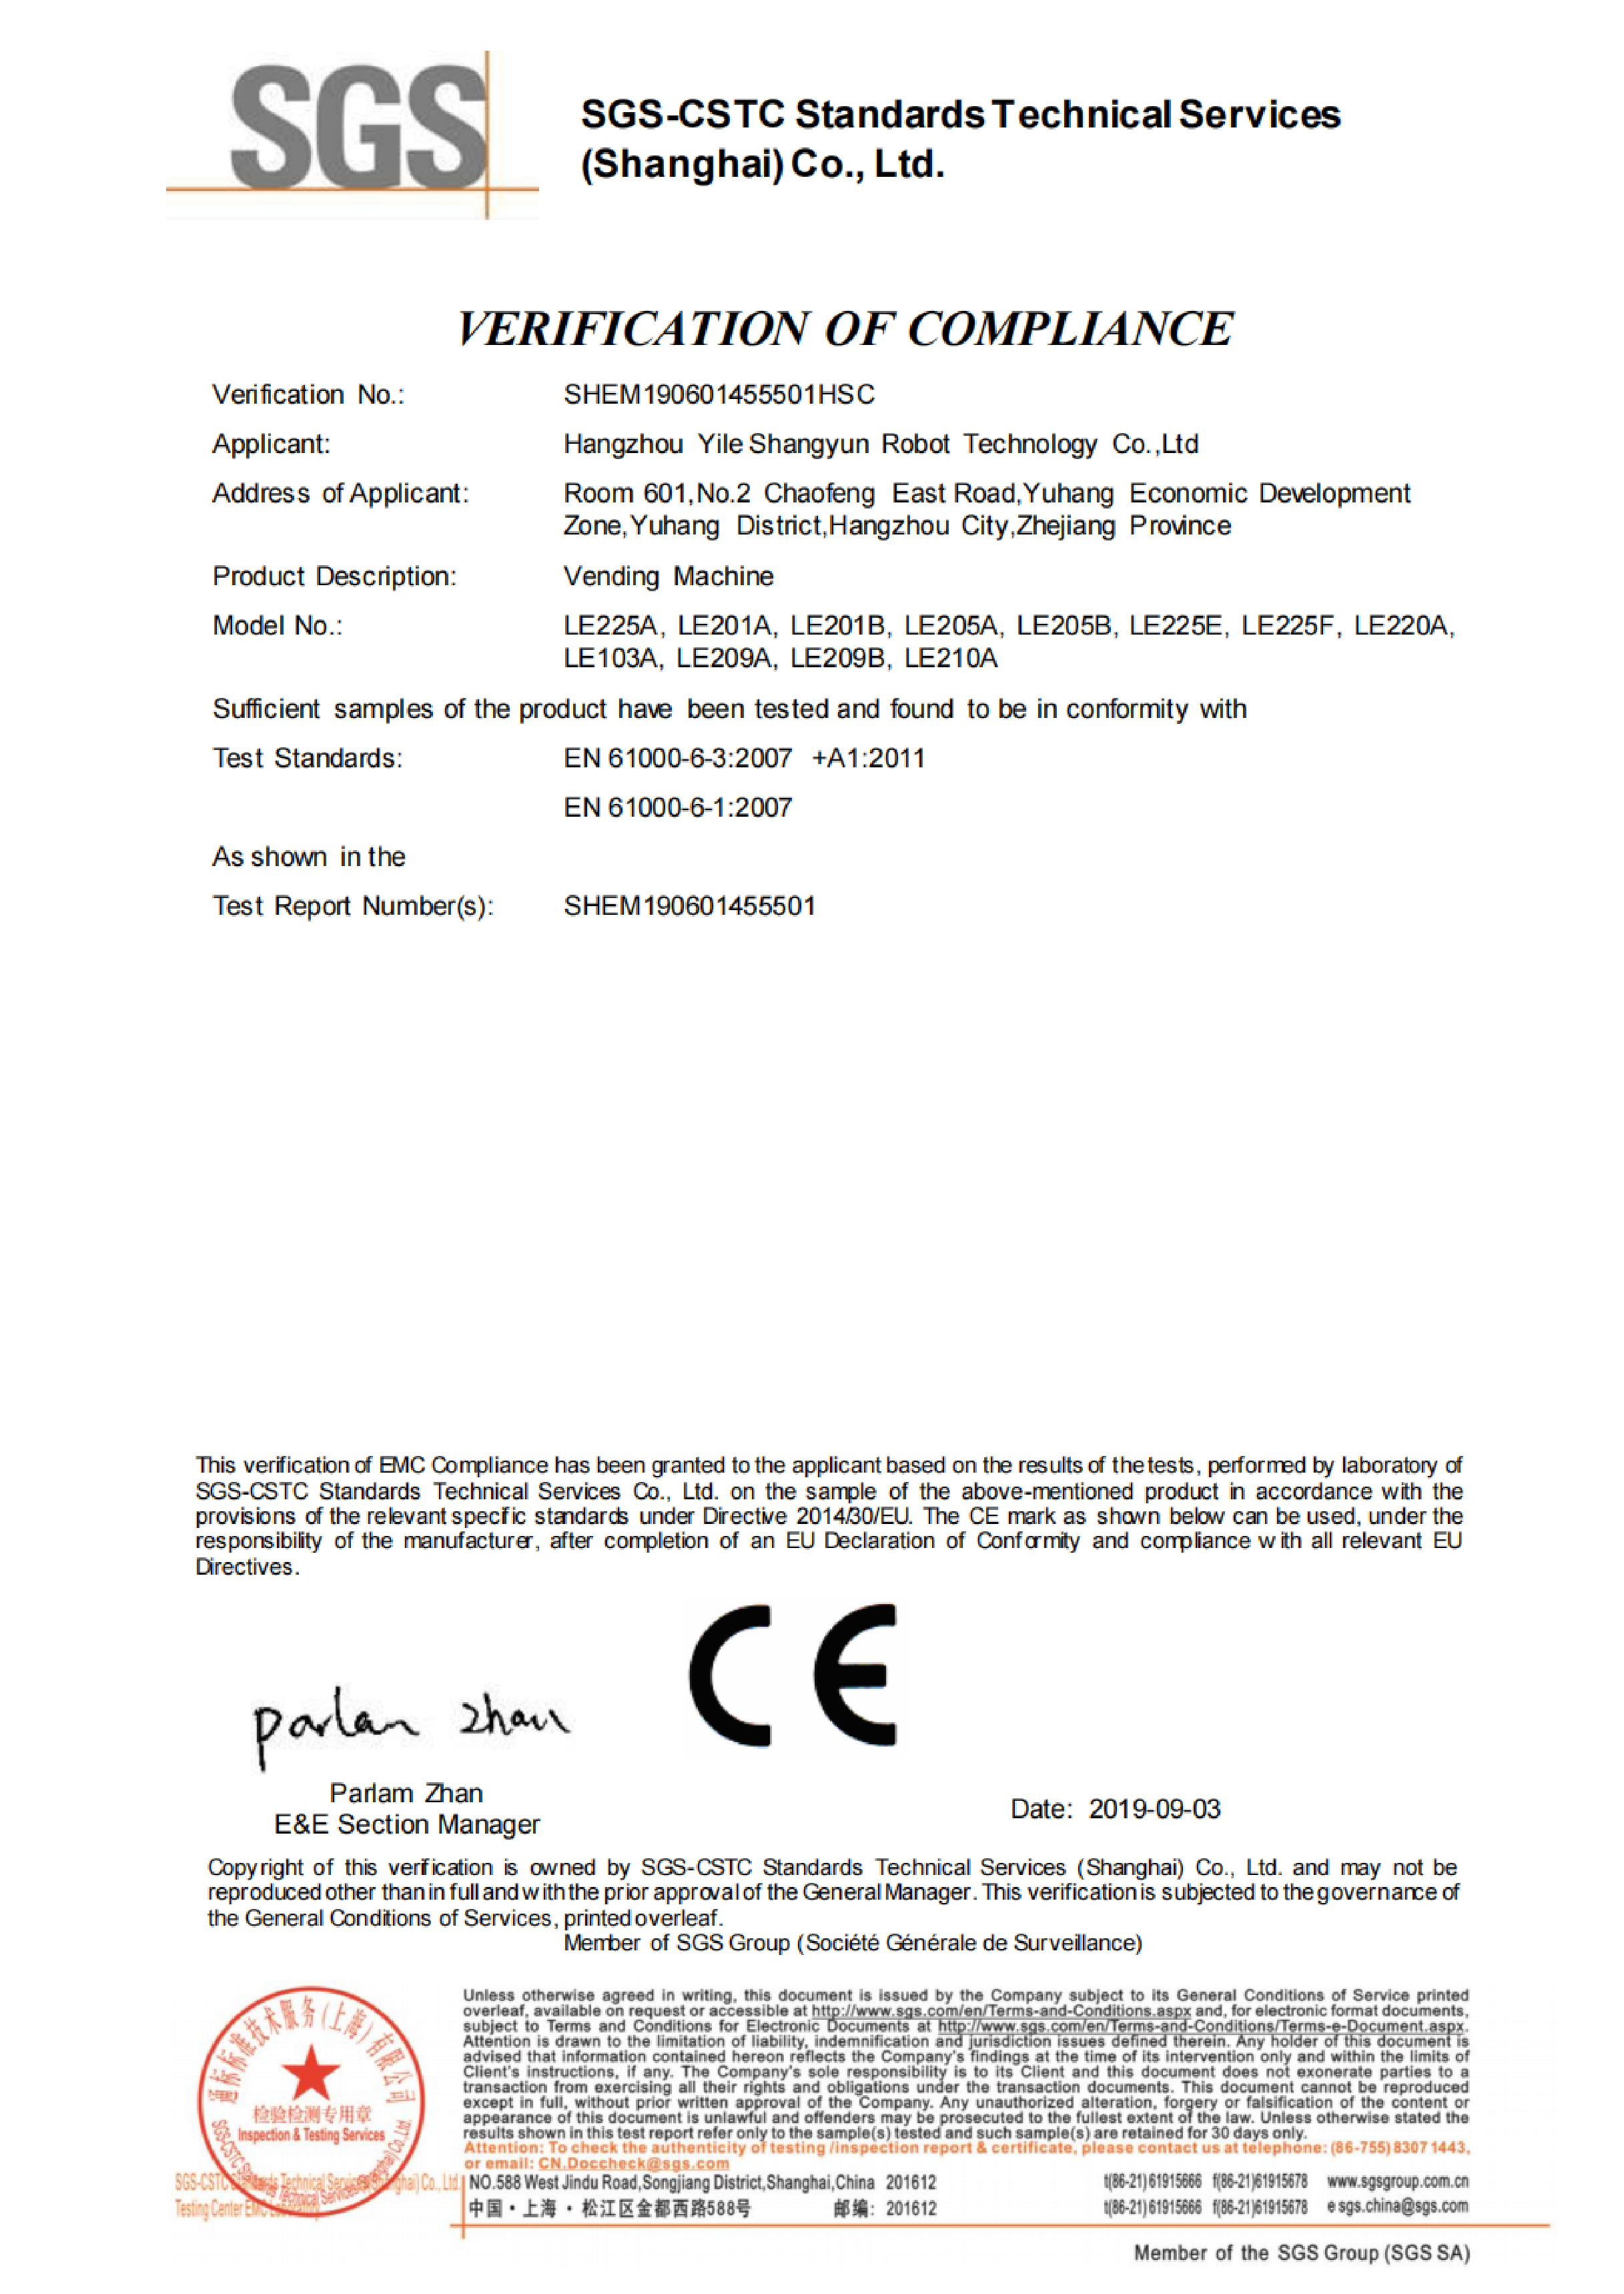 售货机 CE 证书